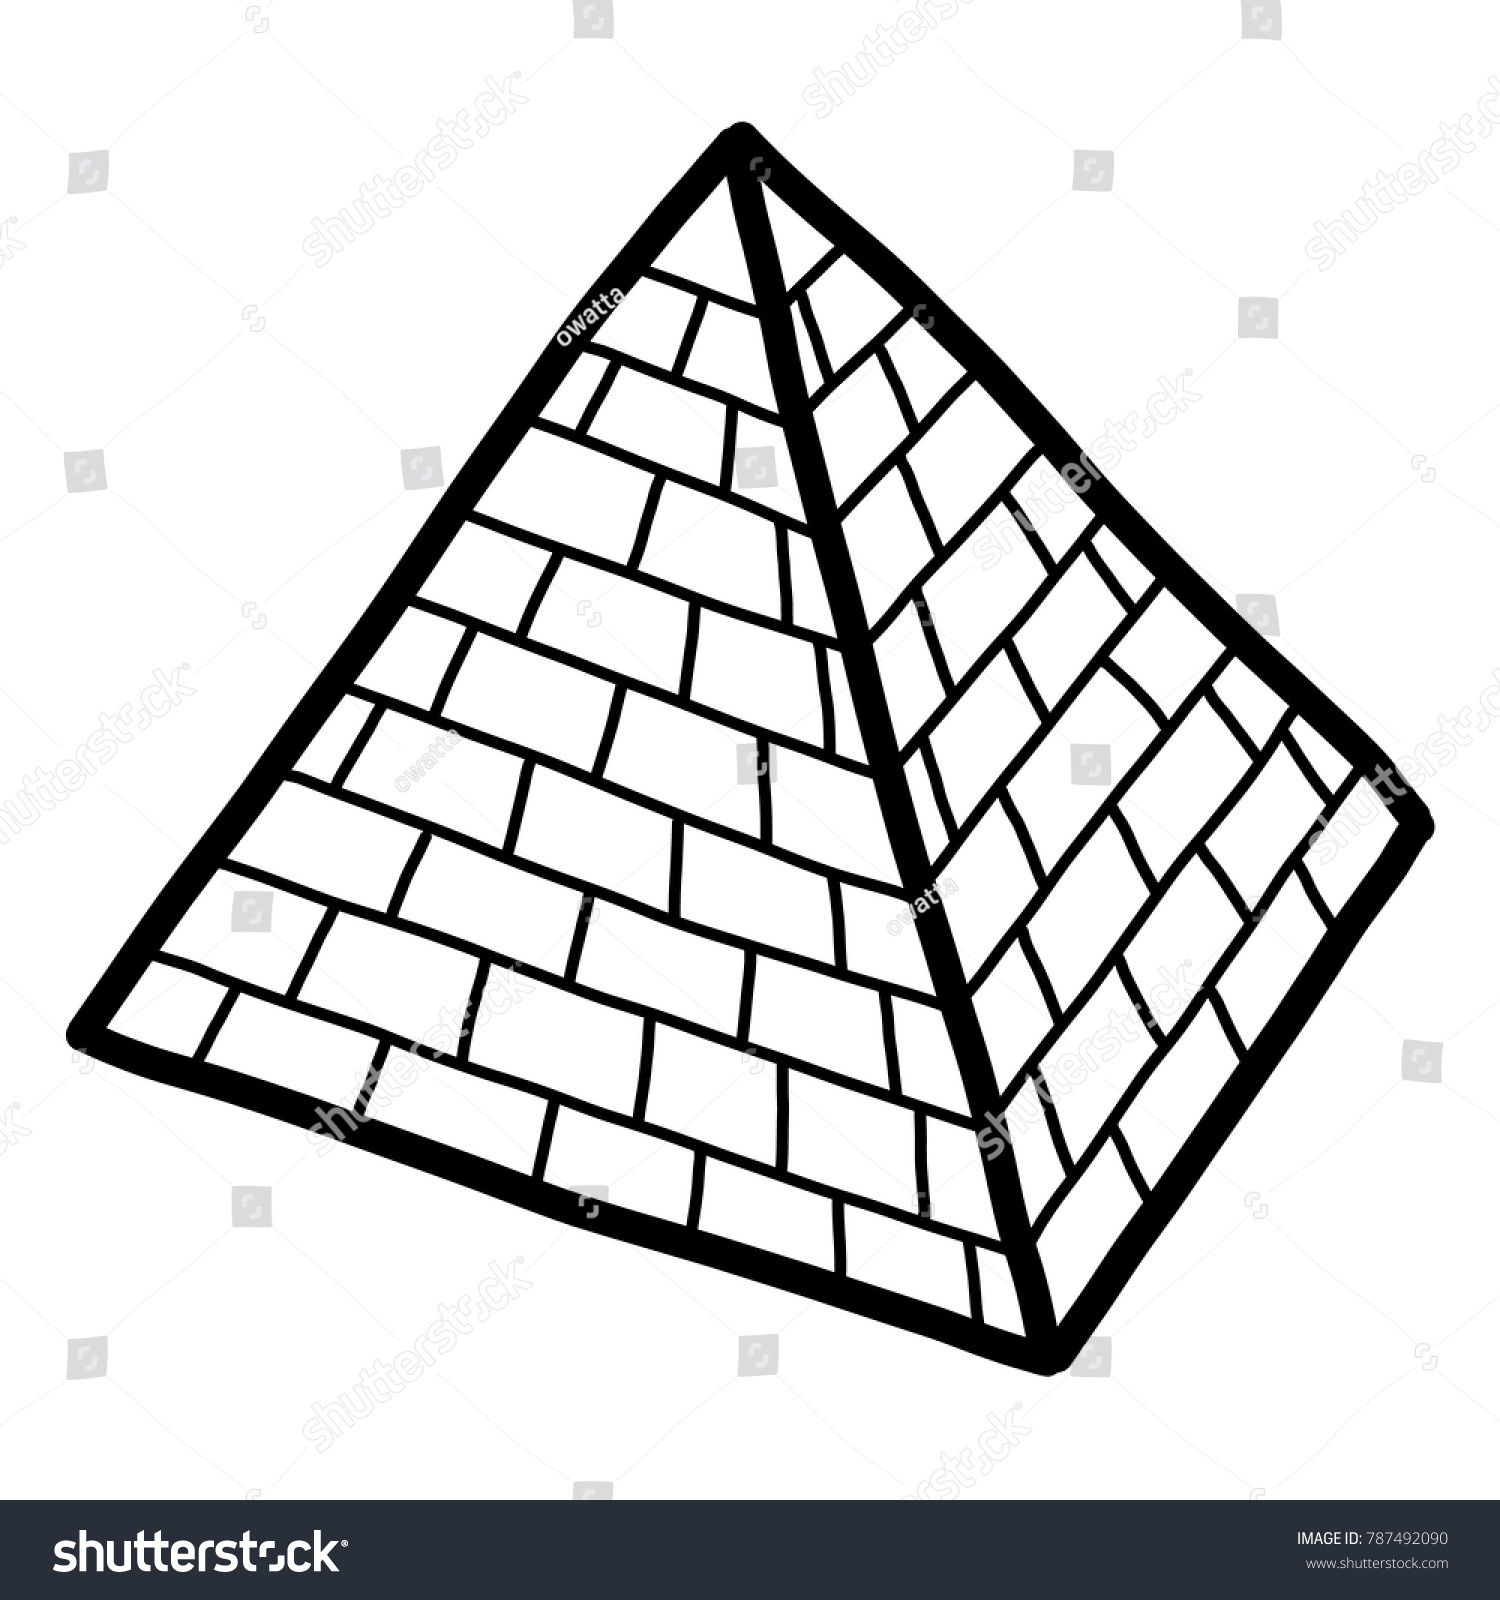 Предметы в форме пирамиды вектор